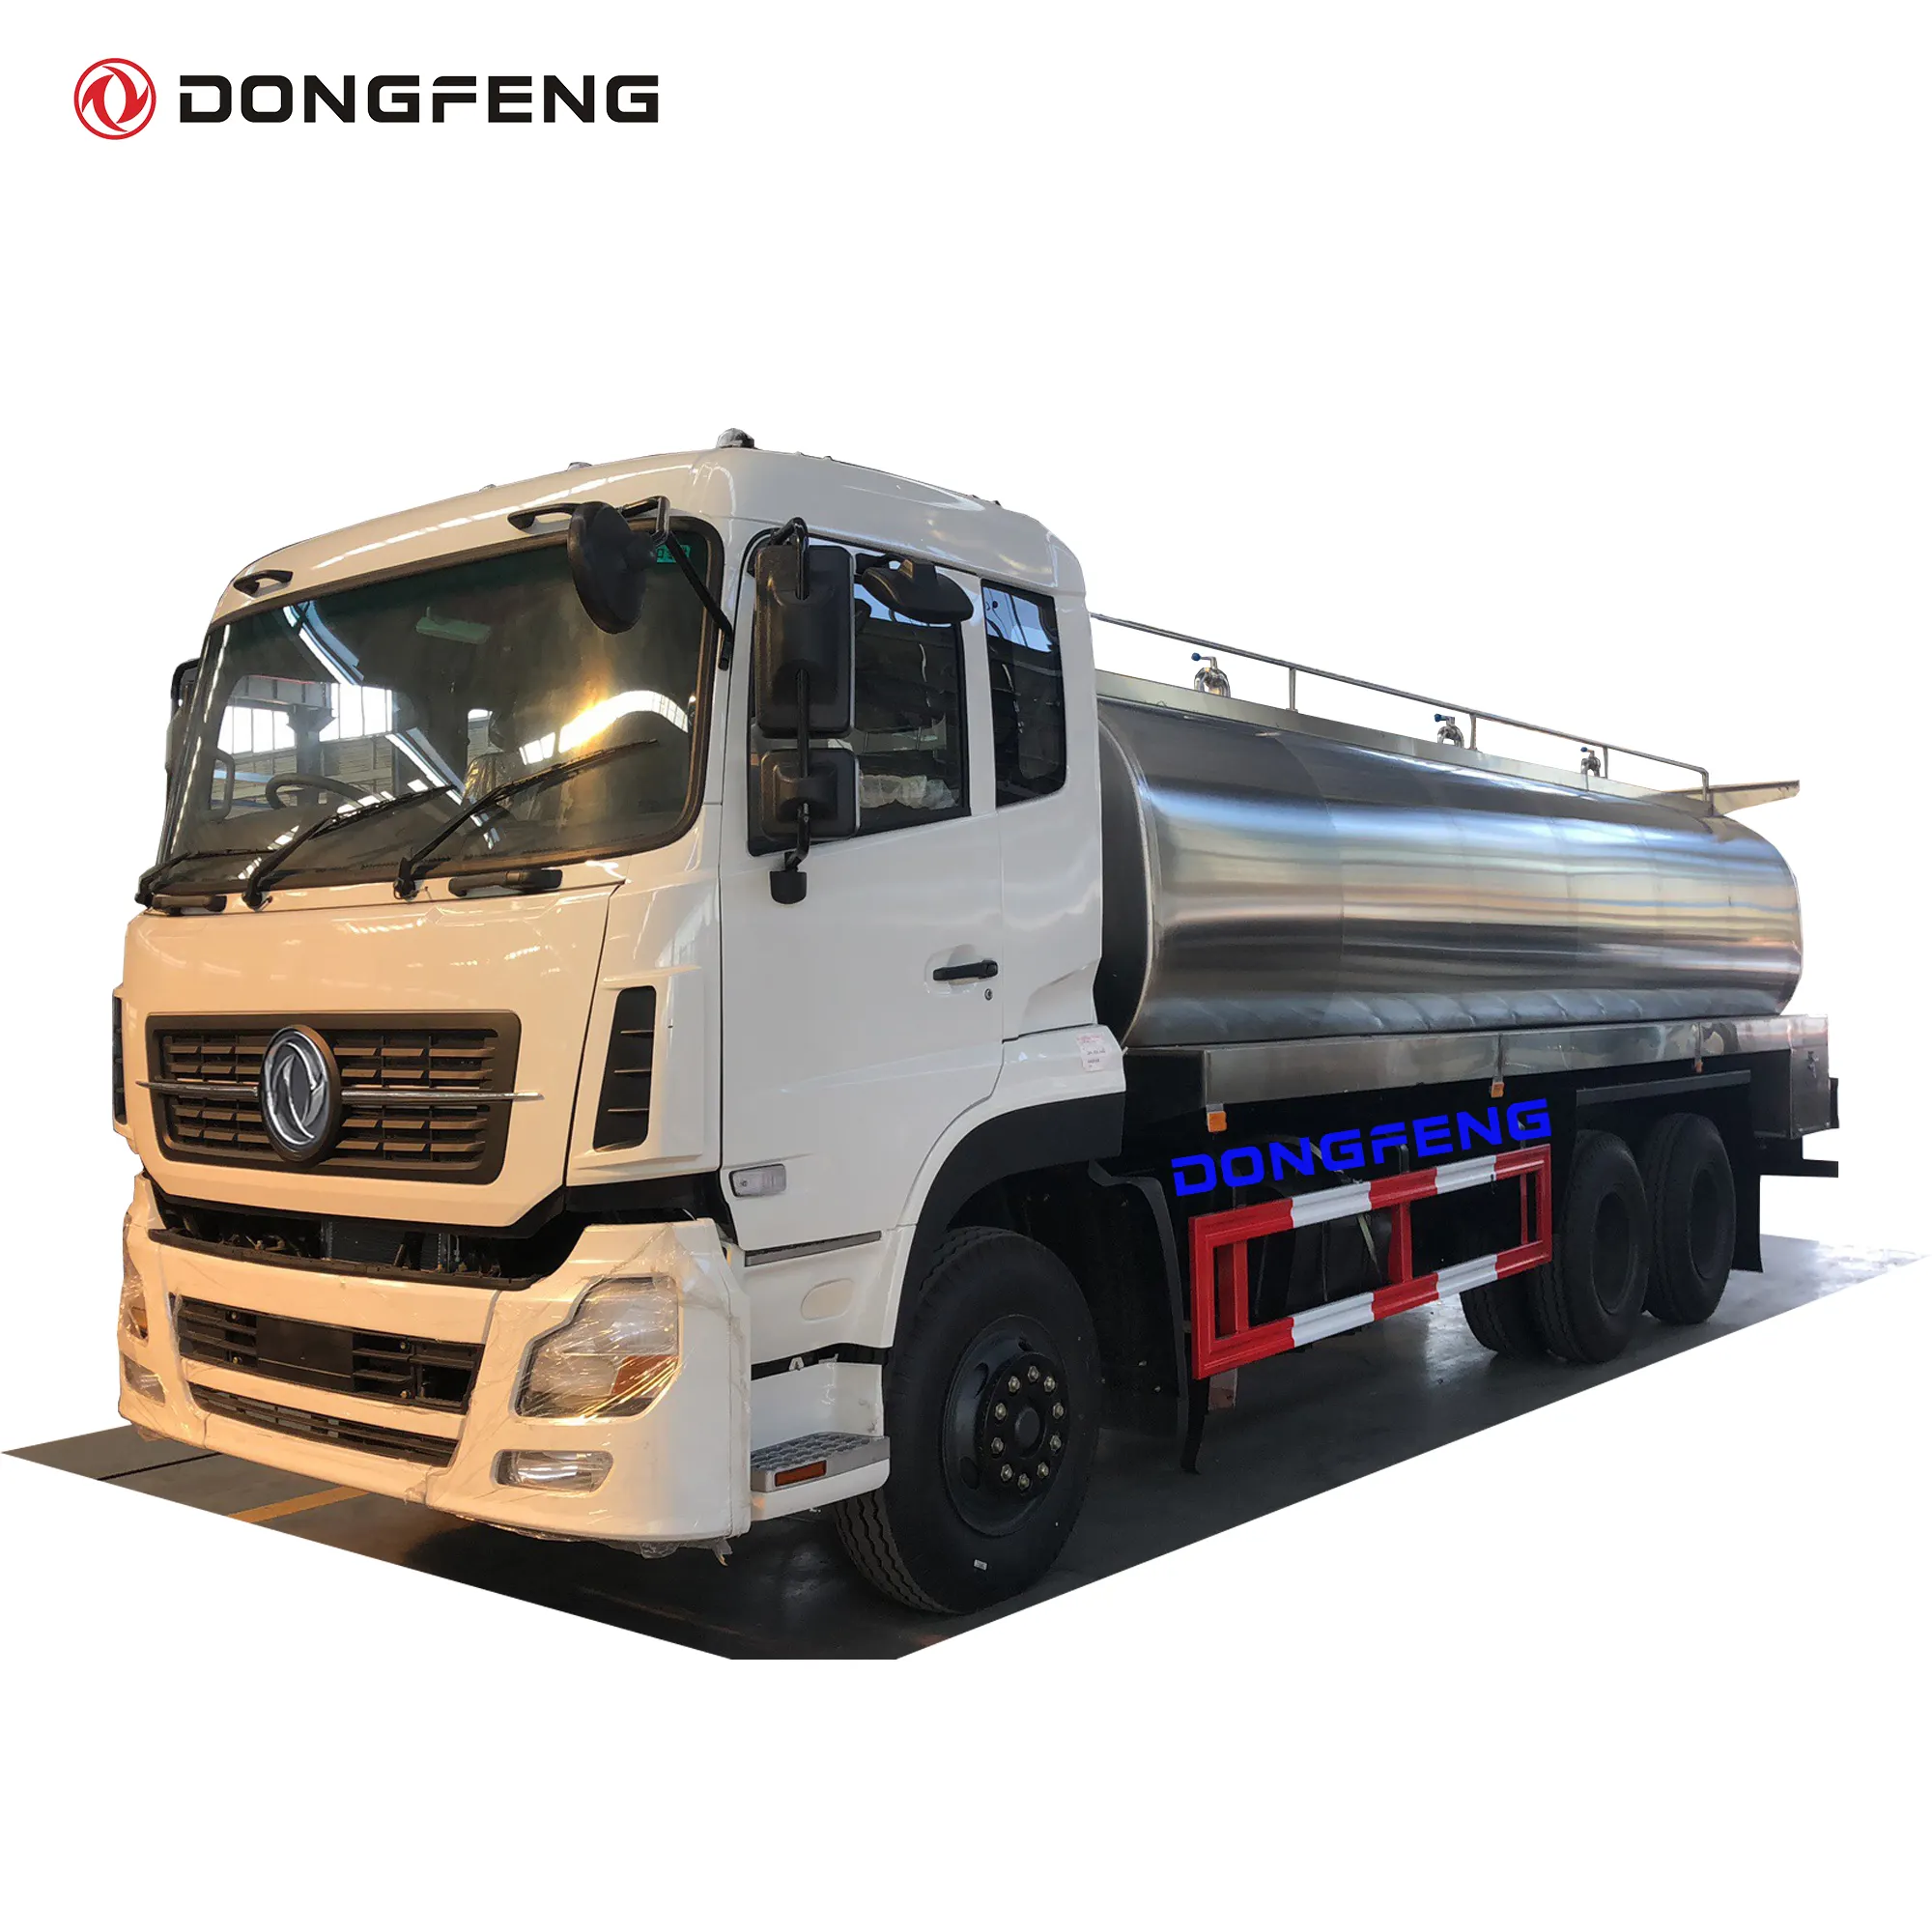 Caminhão de tanque de água potável dongfeng 6x4 rhd, 18000 ~ 20000 litros com modelo ss304 2b, caminhão de entrega de água